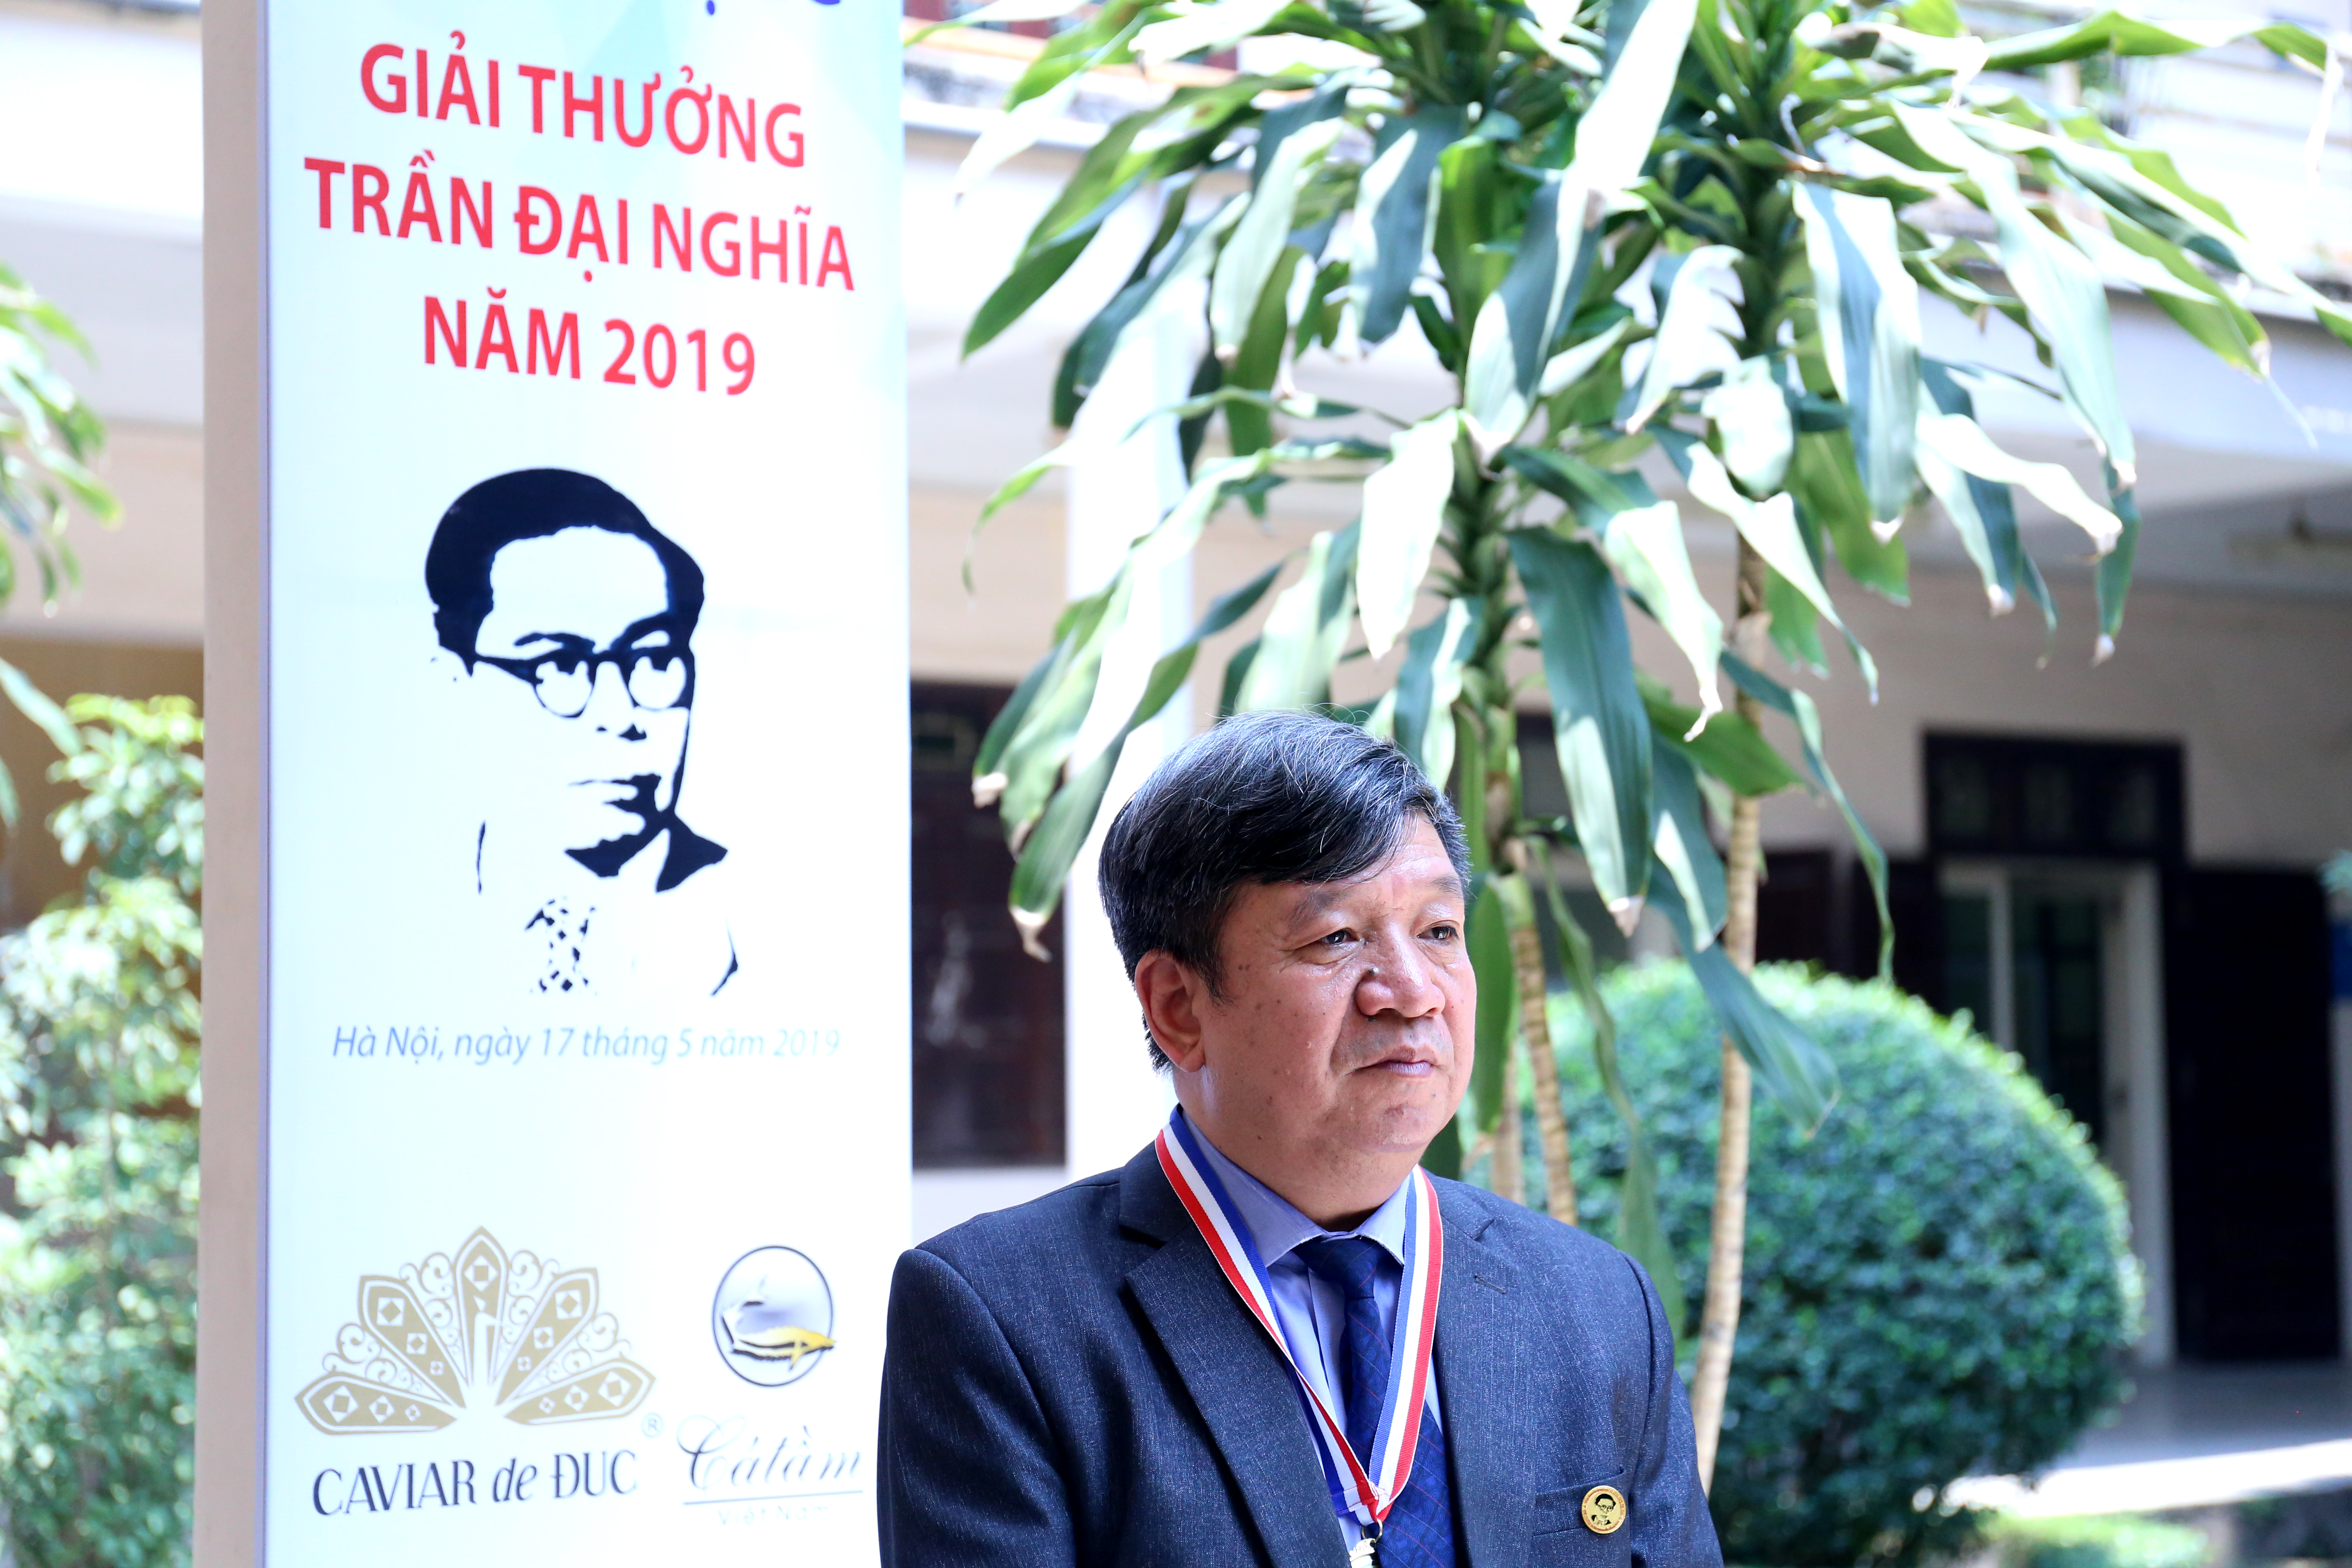 PGS.TS. Trịnh Văn Tuyên trong lễ trao giải thưởng Trần Đại Nghĩa. Ảnh: Thanh An